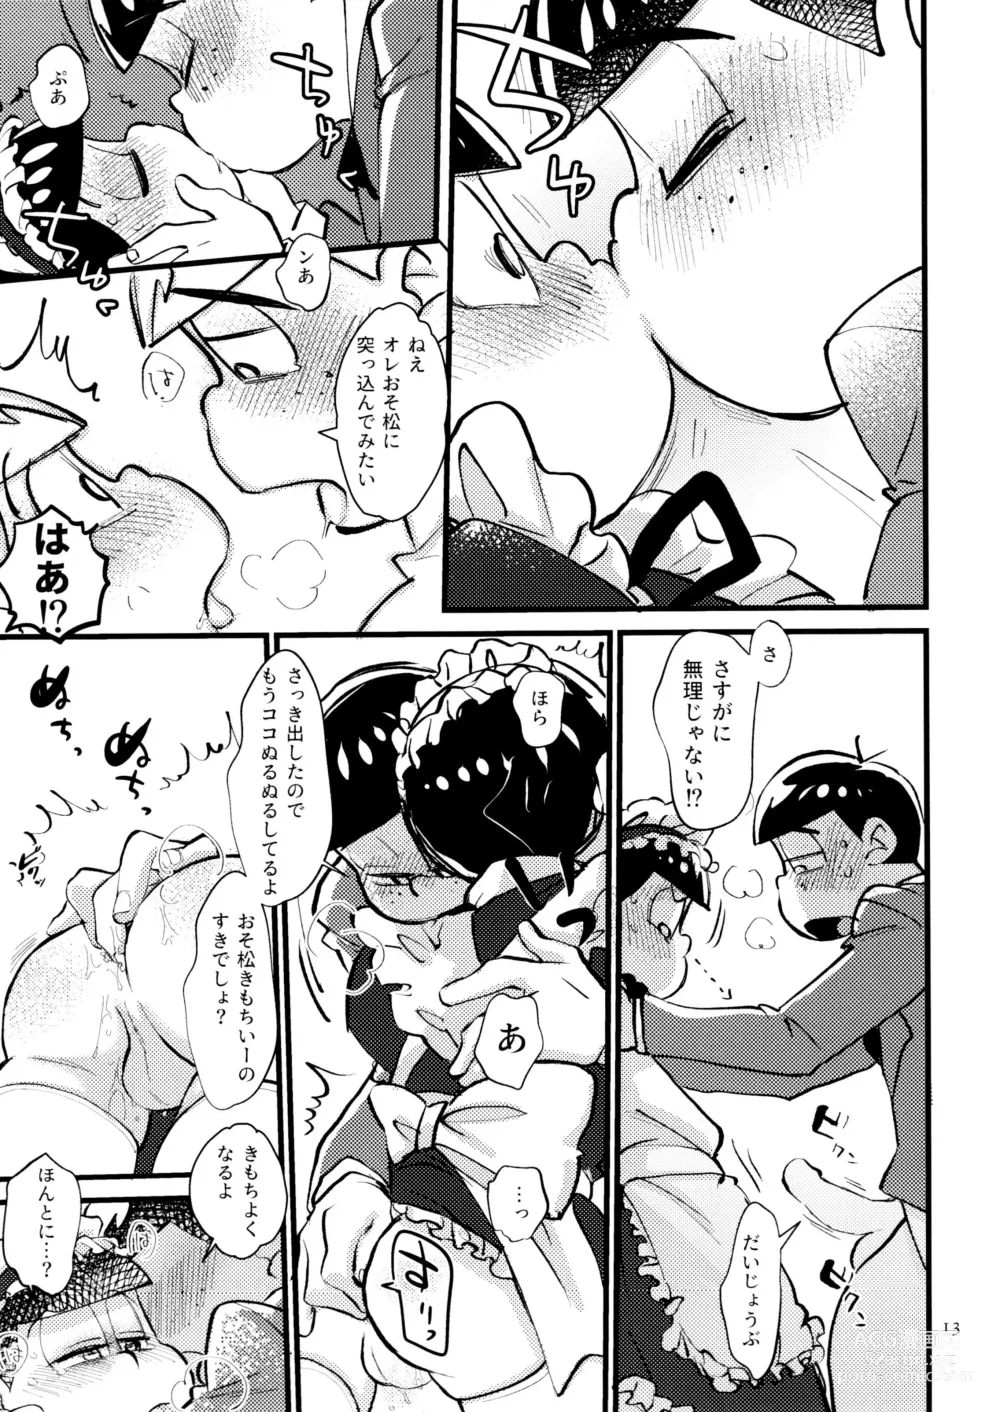 Page 13 of doujinshi Boku no Ecchi na Onii-chan